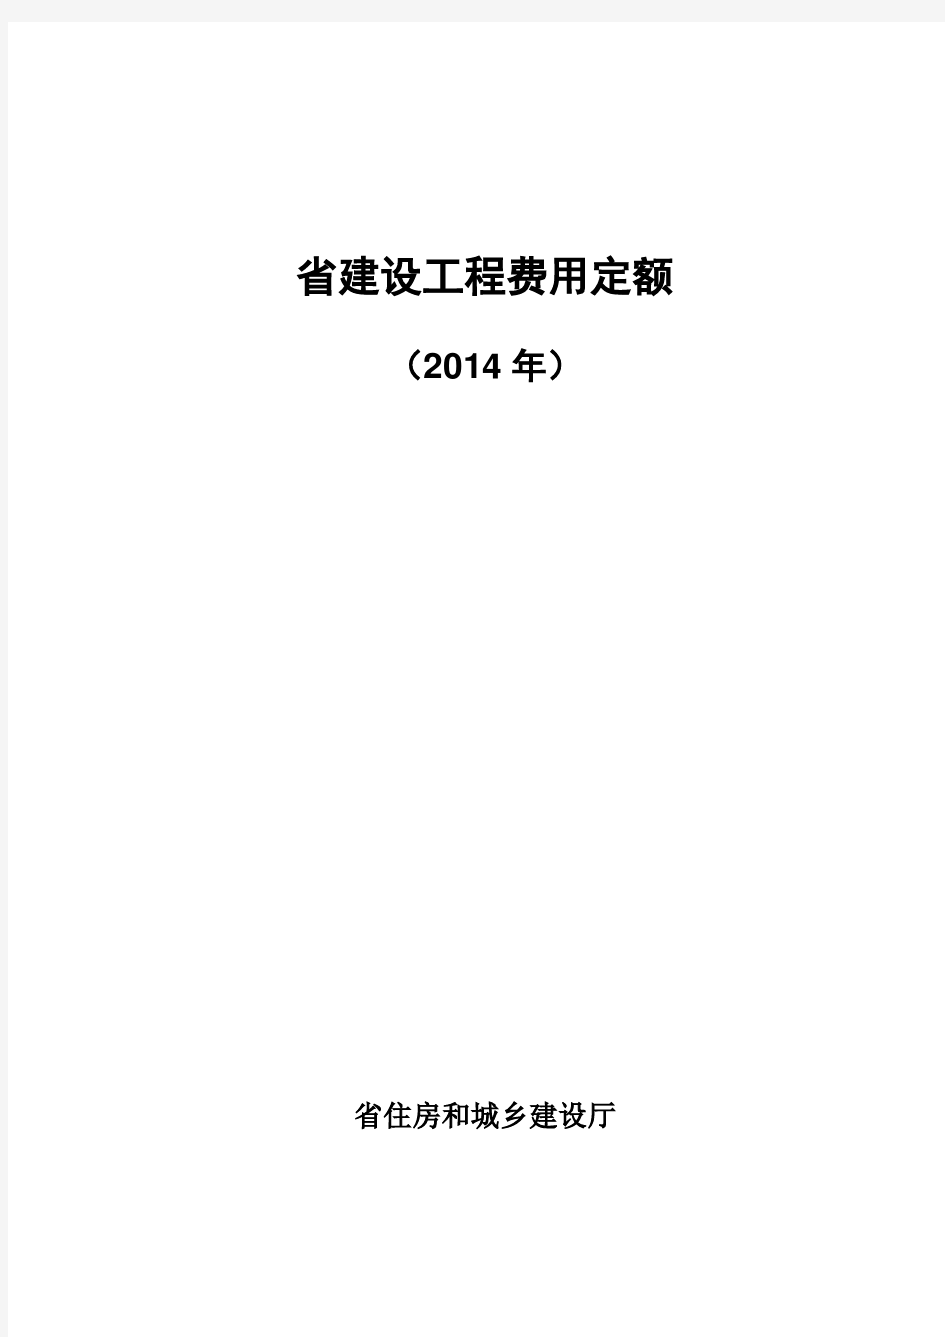 江苏省建设工程费用定额(2014年)299号